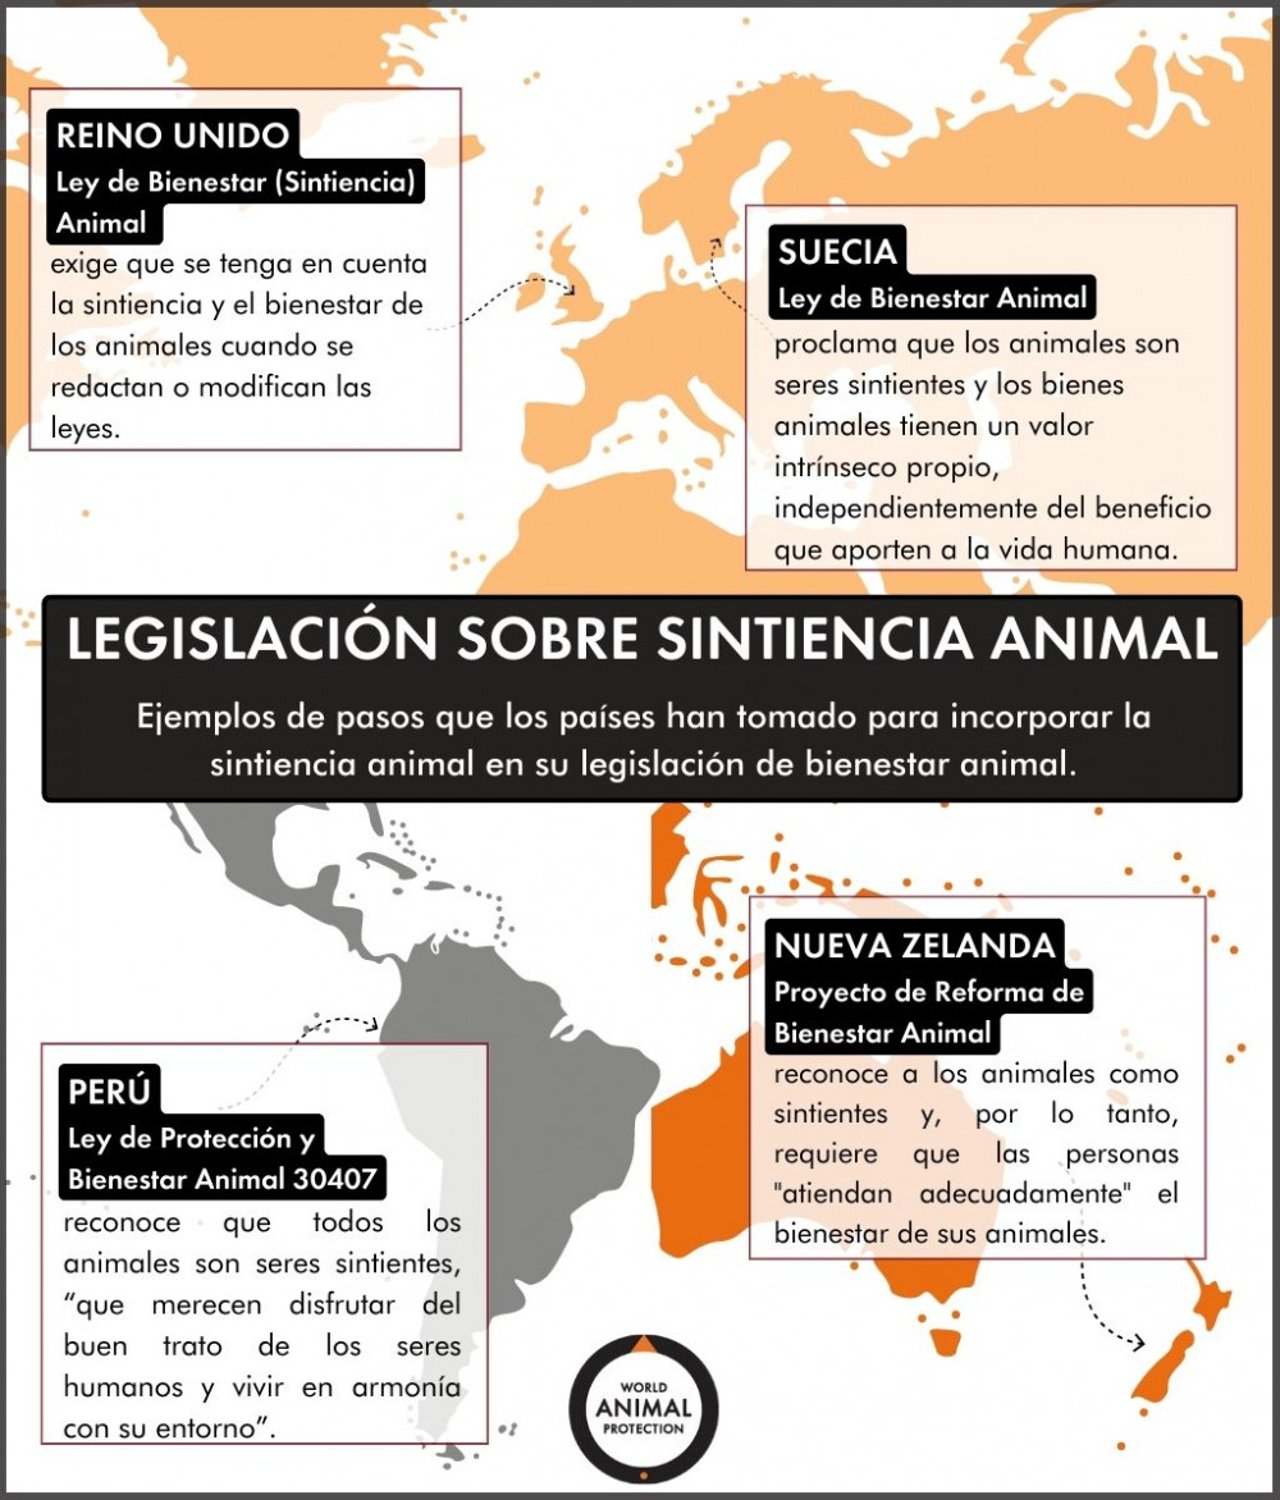 El resumen de la información de este artículo sobre la legislación internacional de la sintiencia animal mostrada en un mapa